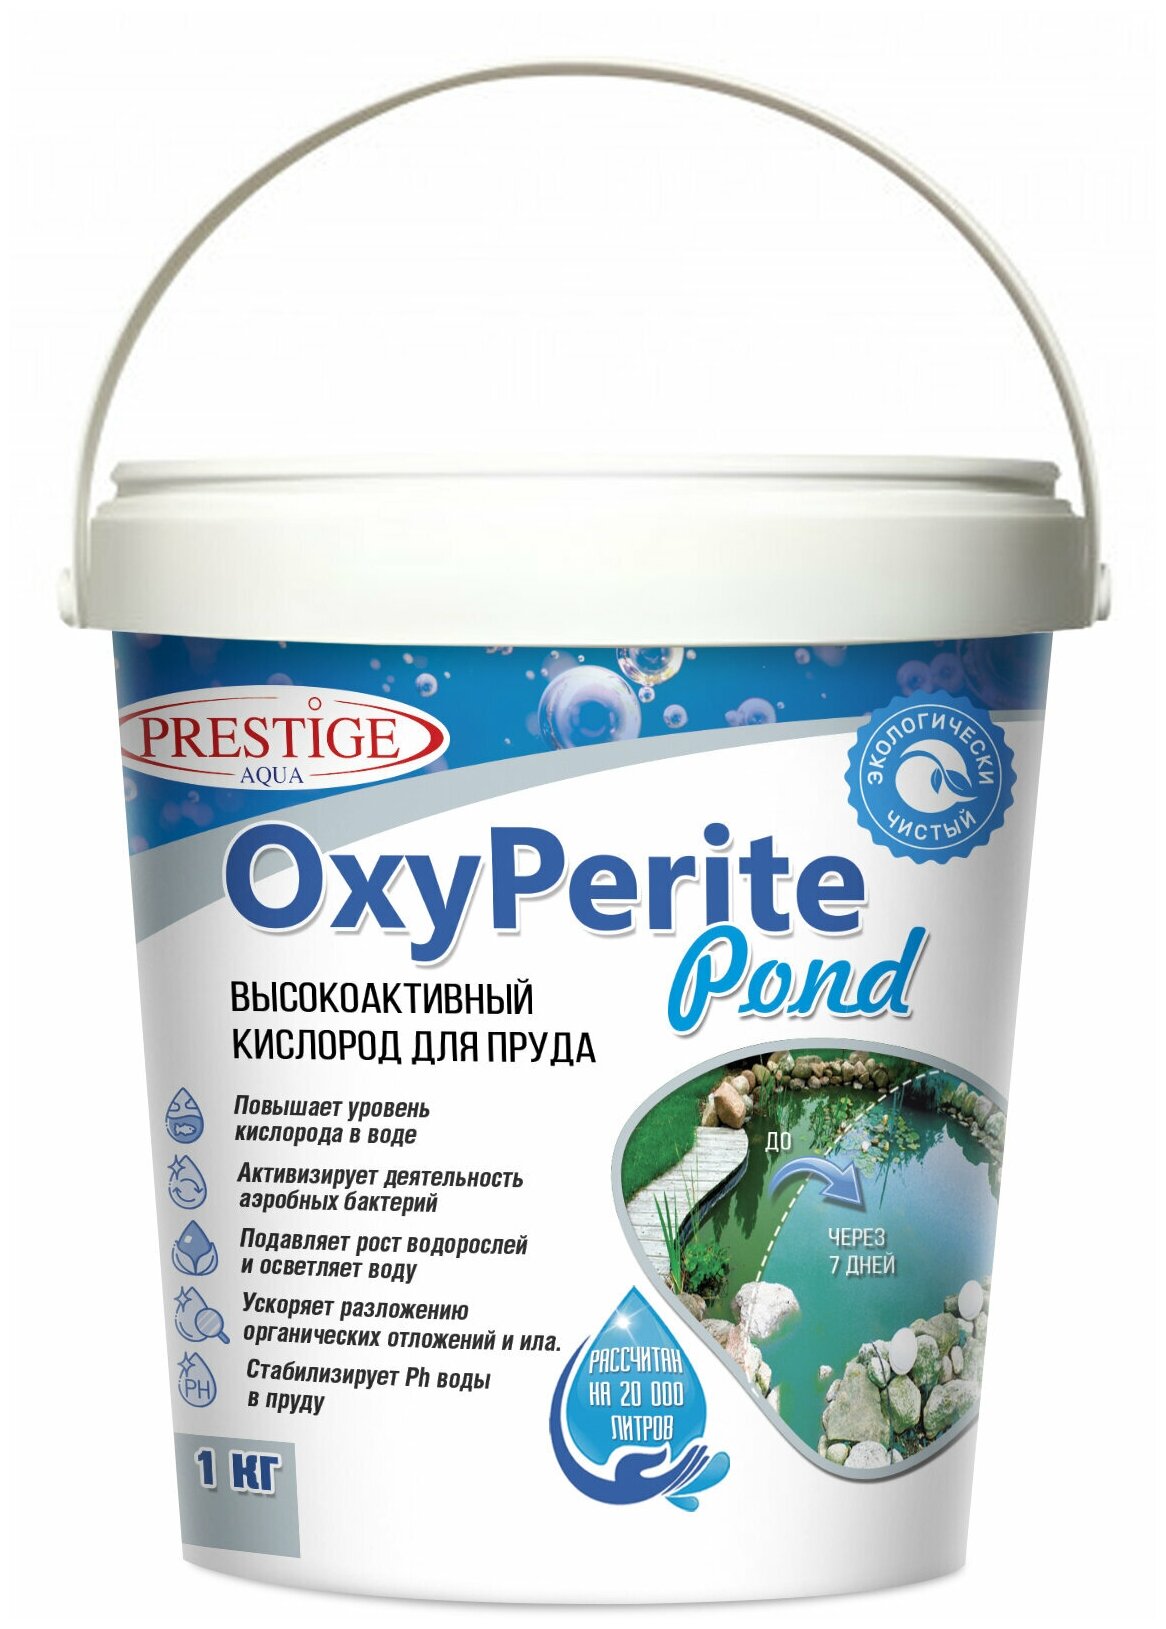 Средство против водорослей в пруду OxyPerite Pond 1 кг PRESTIGE AQUA